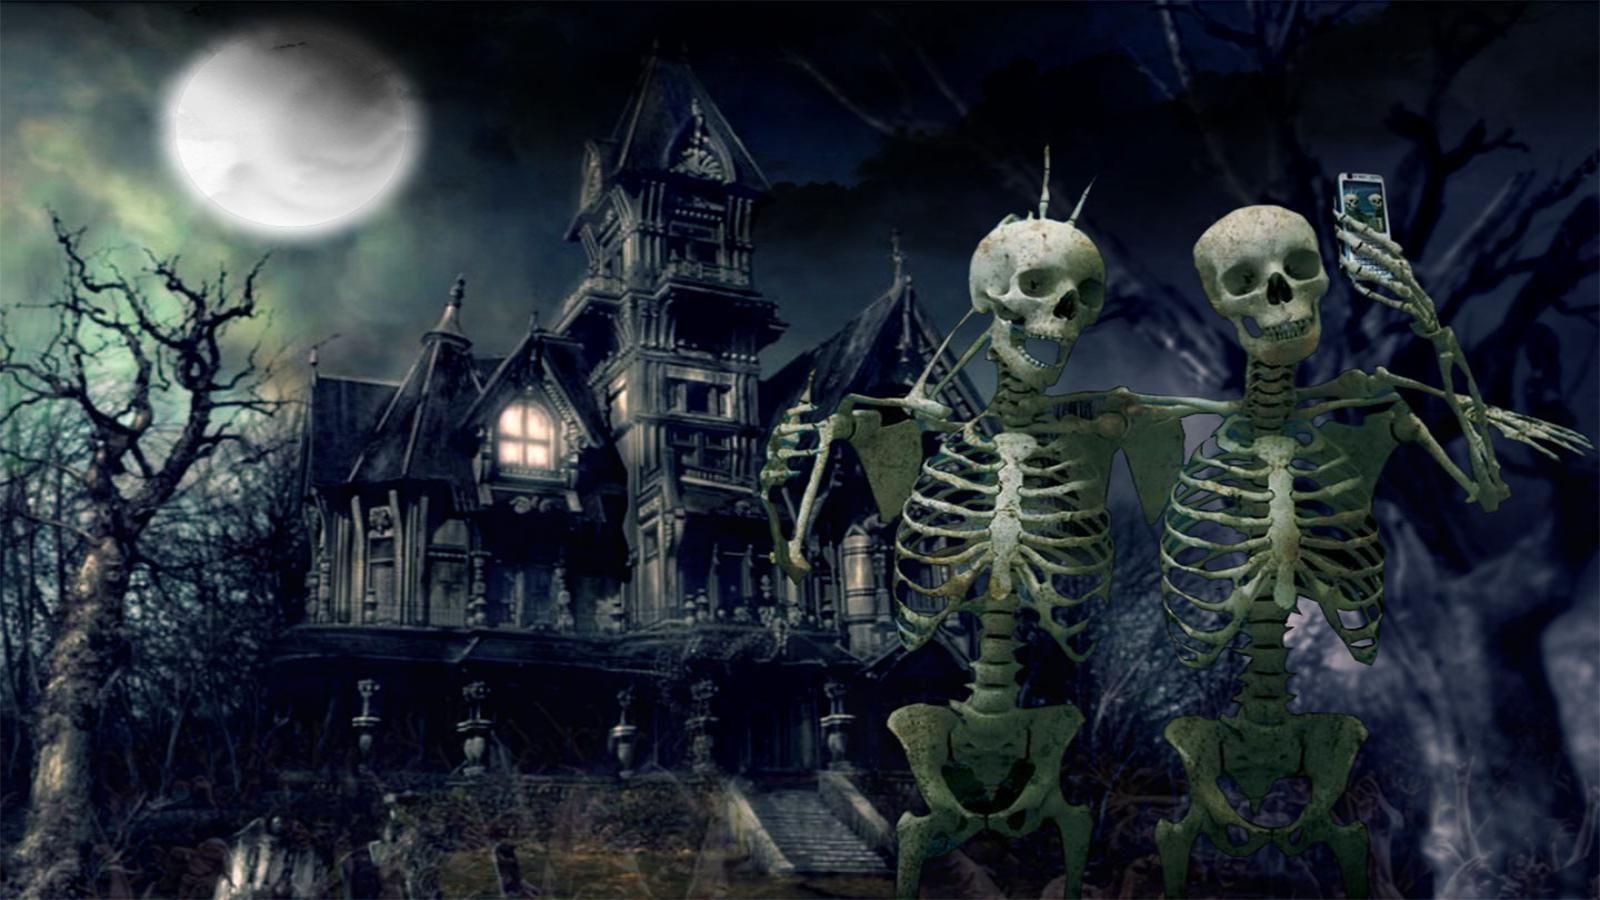 Scary Halloween Desktop Wallpaper. Halloween desktop wallpaper, Halloween image, Happy halloween picture